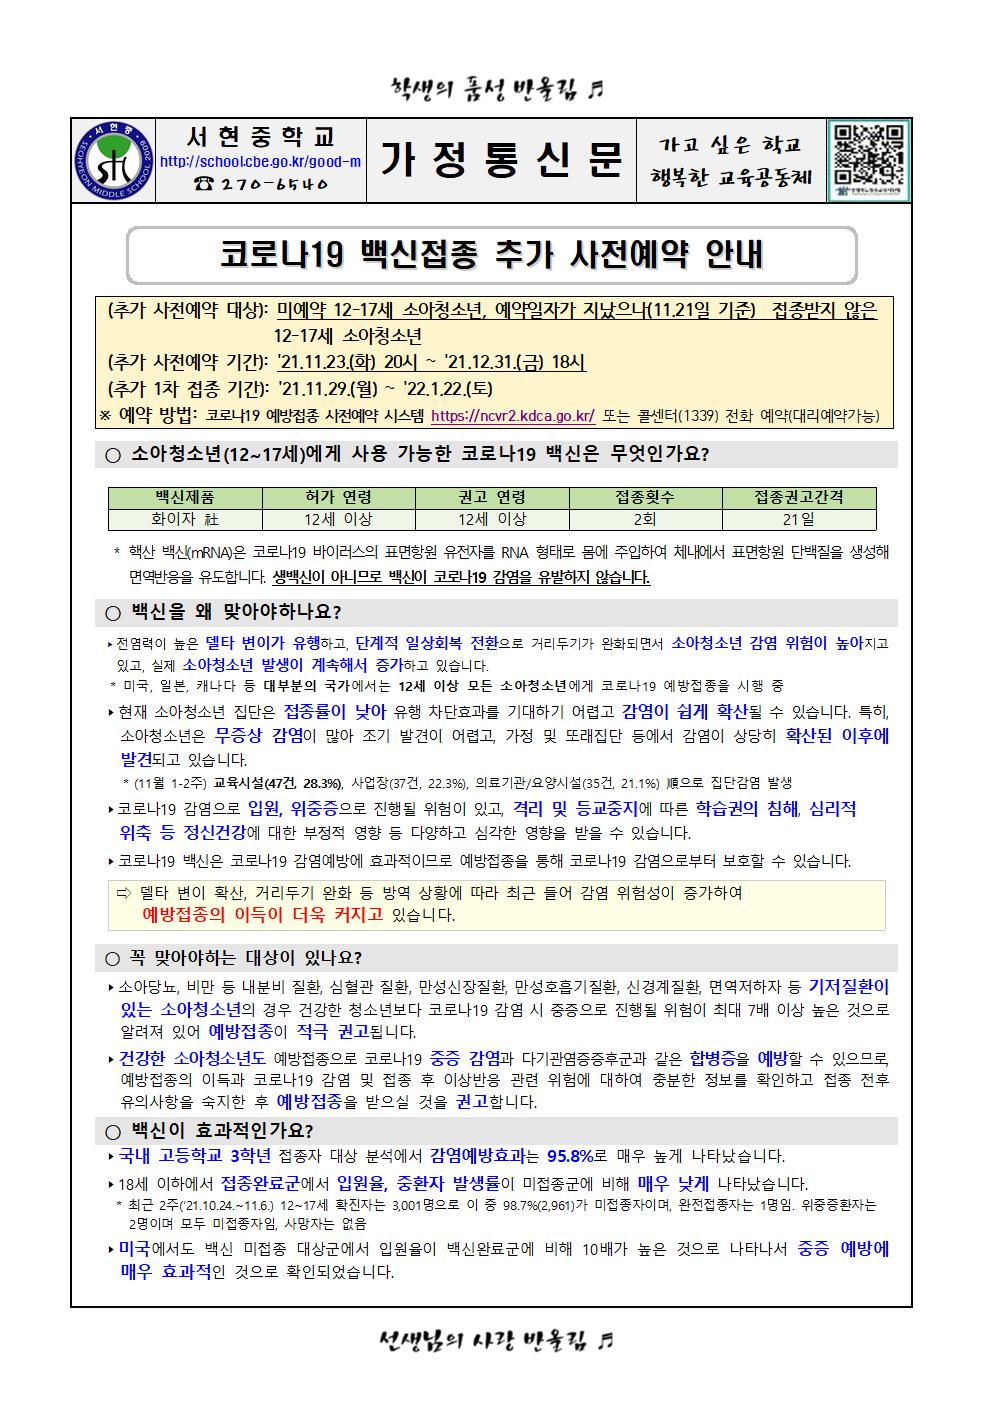 코로나19 백신접종 추가 사전예약 안내 가정통신문001